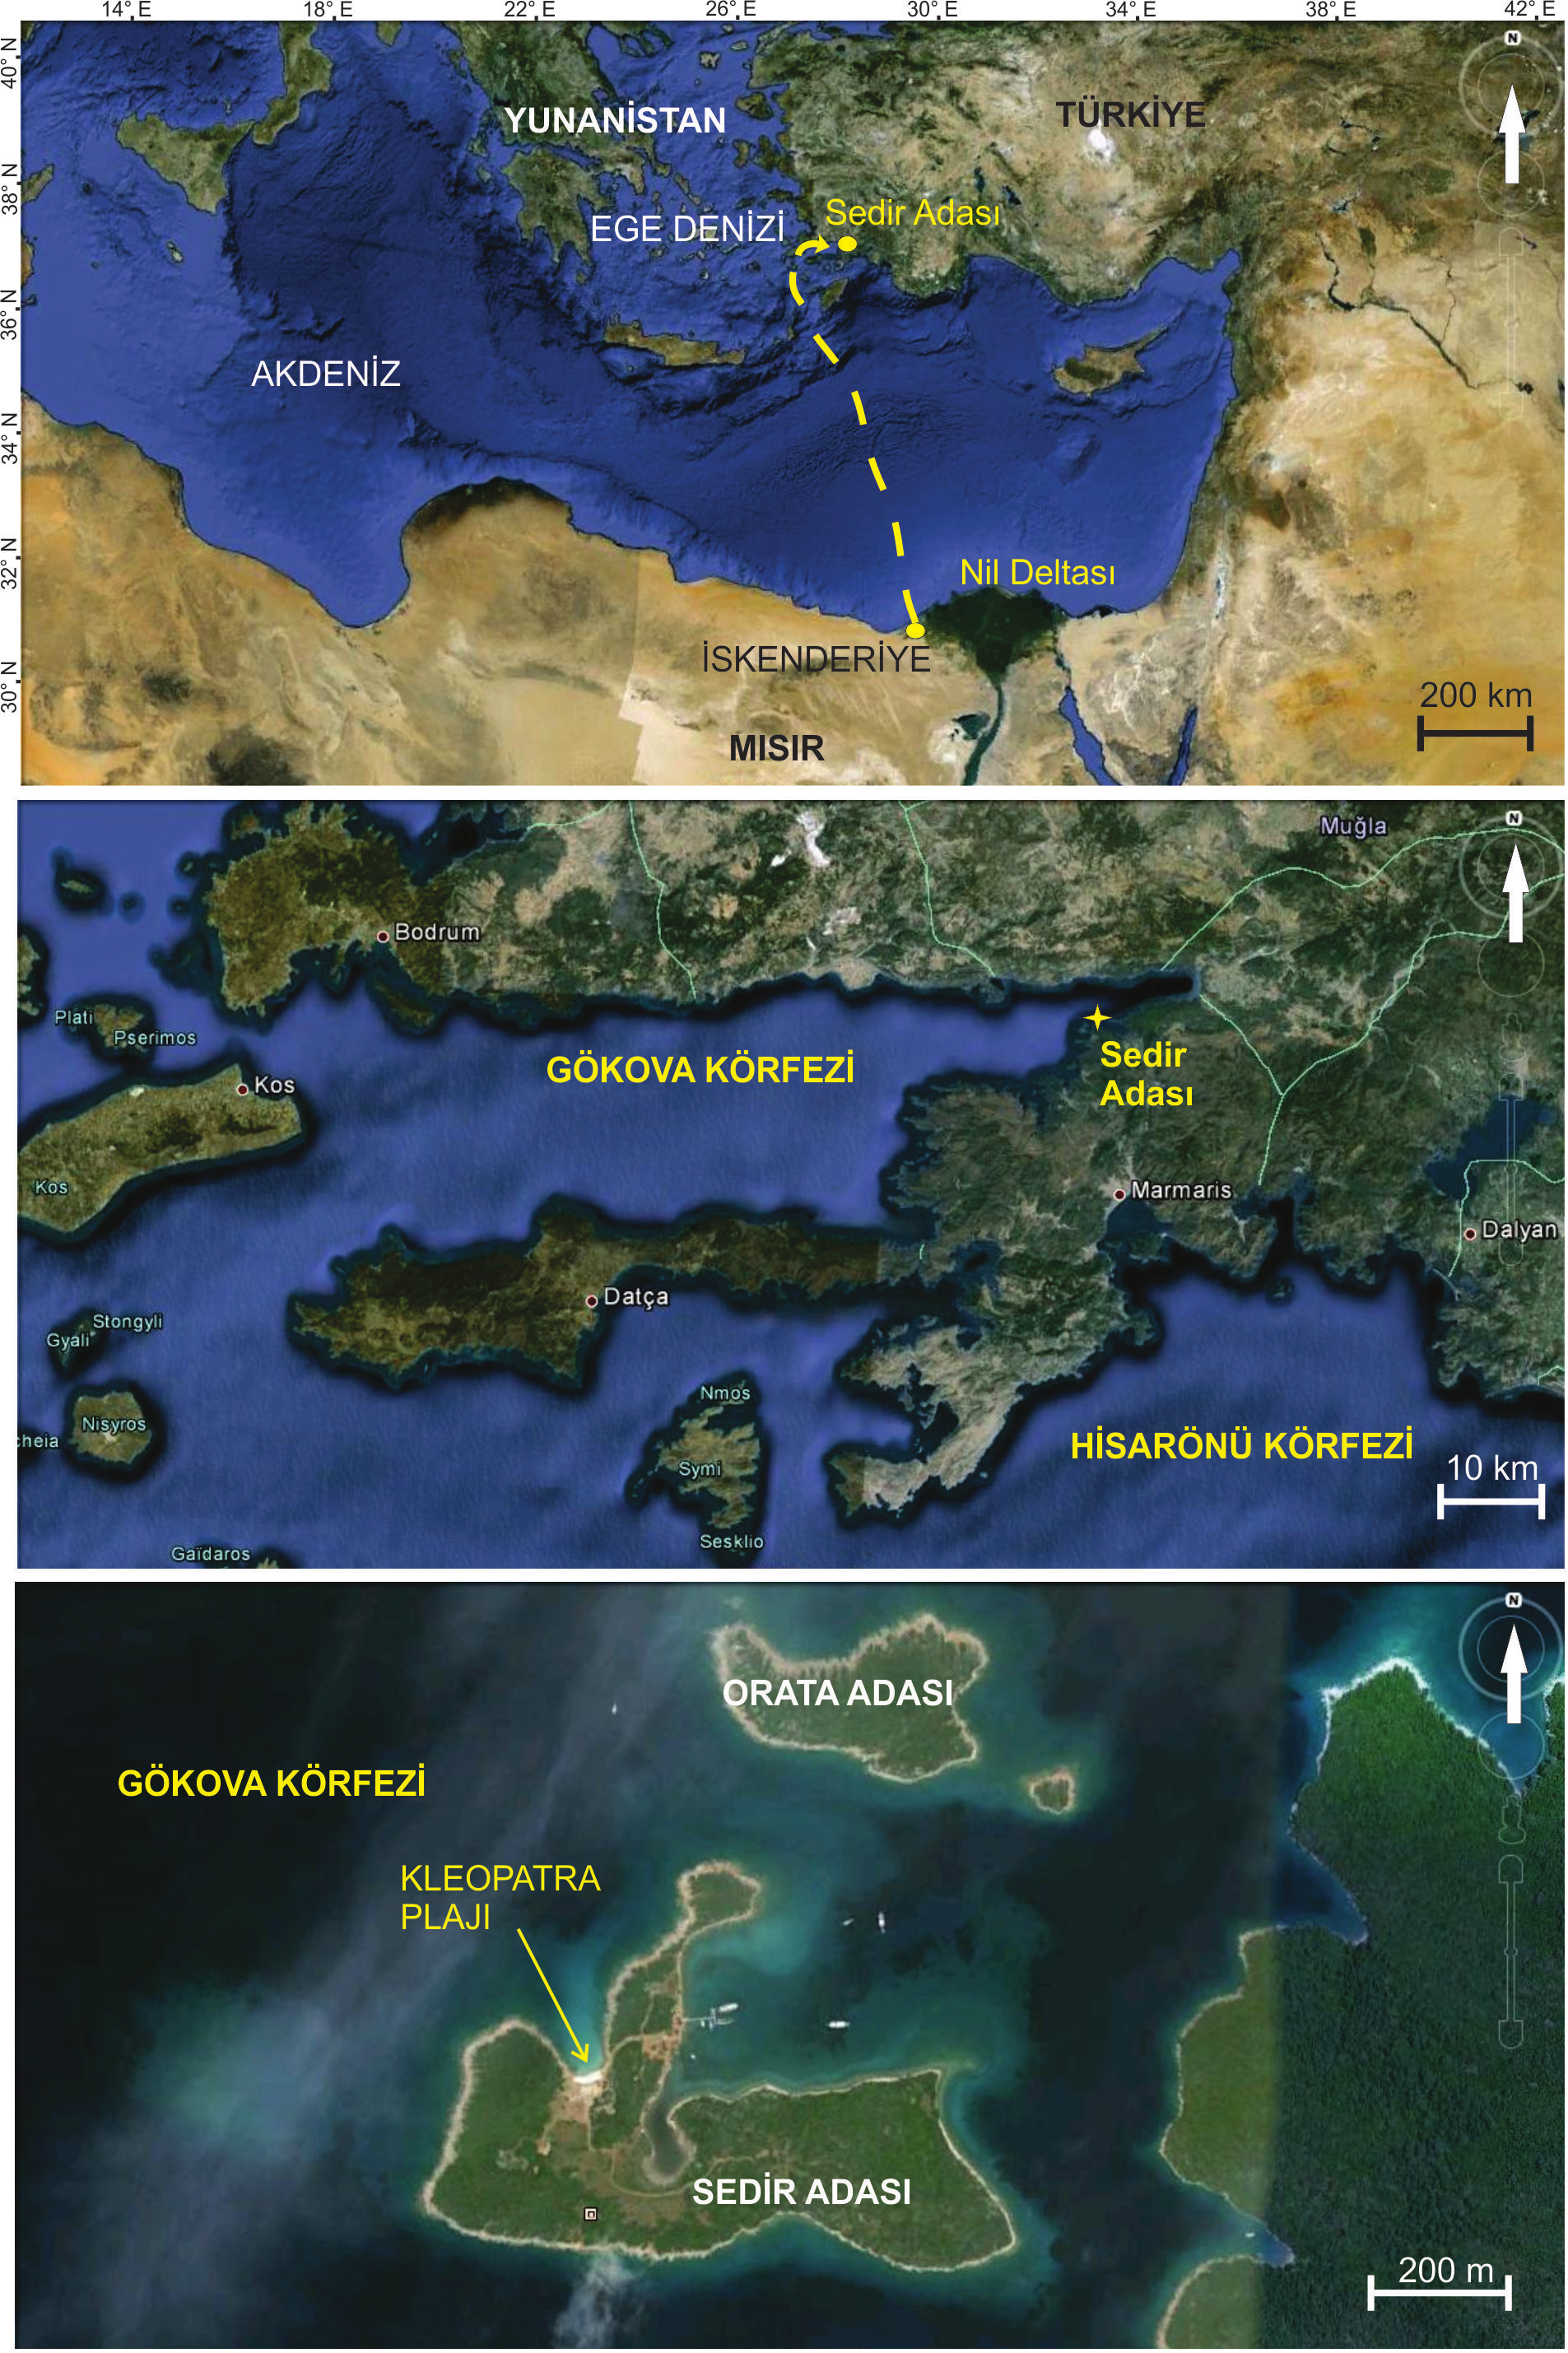 Şekil 4: Sedir Adası, Kleopatra Plajı ve ooidlerin